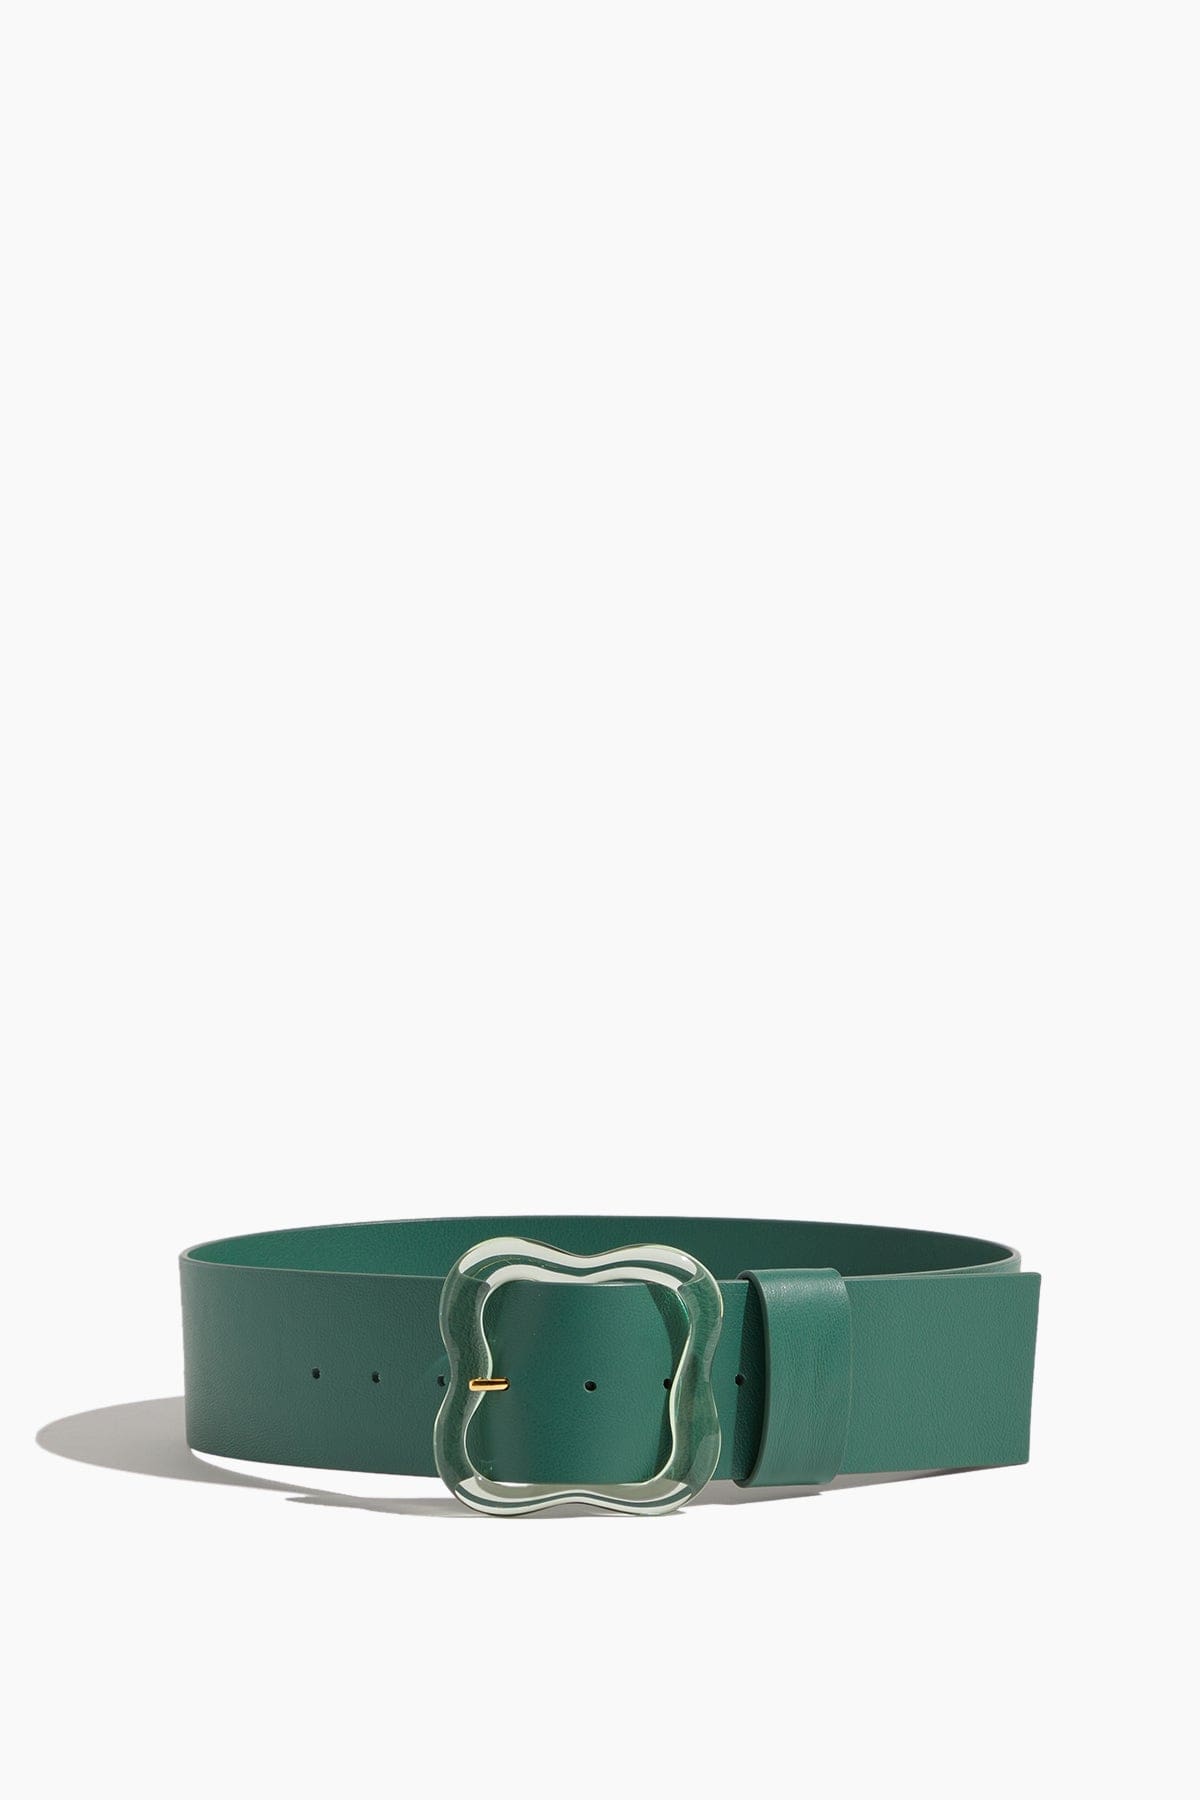 Lizzie Fortunato Belts Florence Belt in Dark Green Emerald